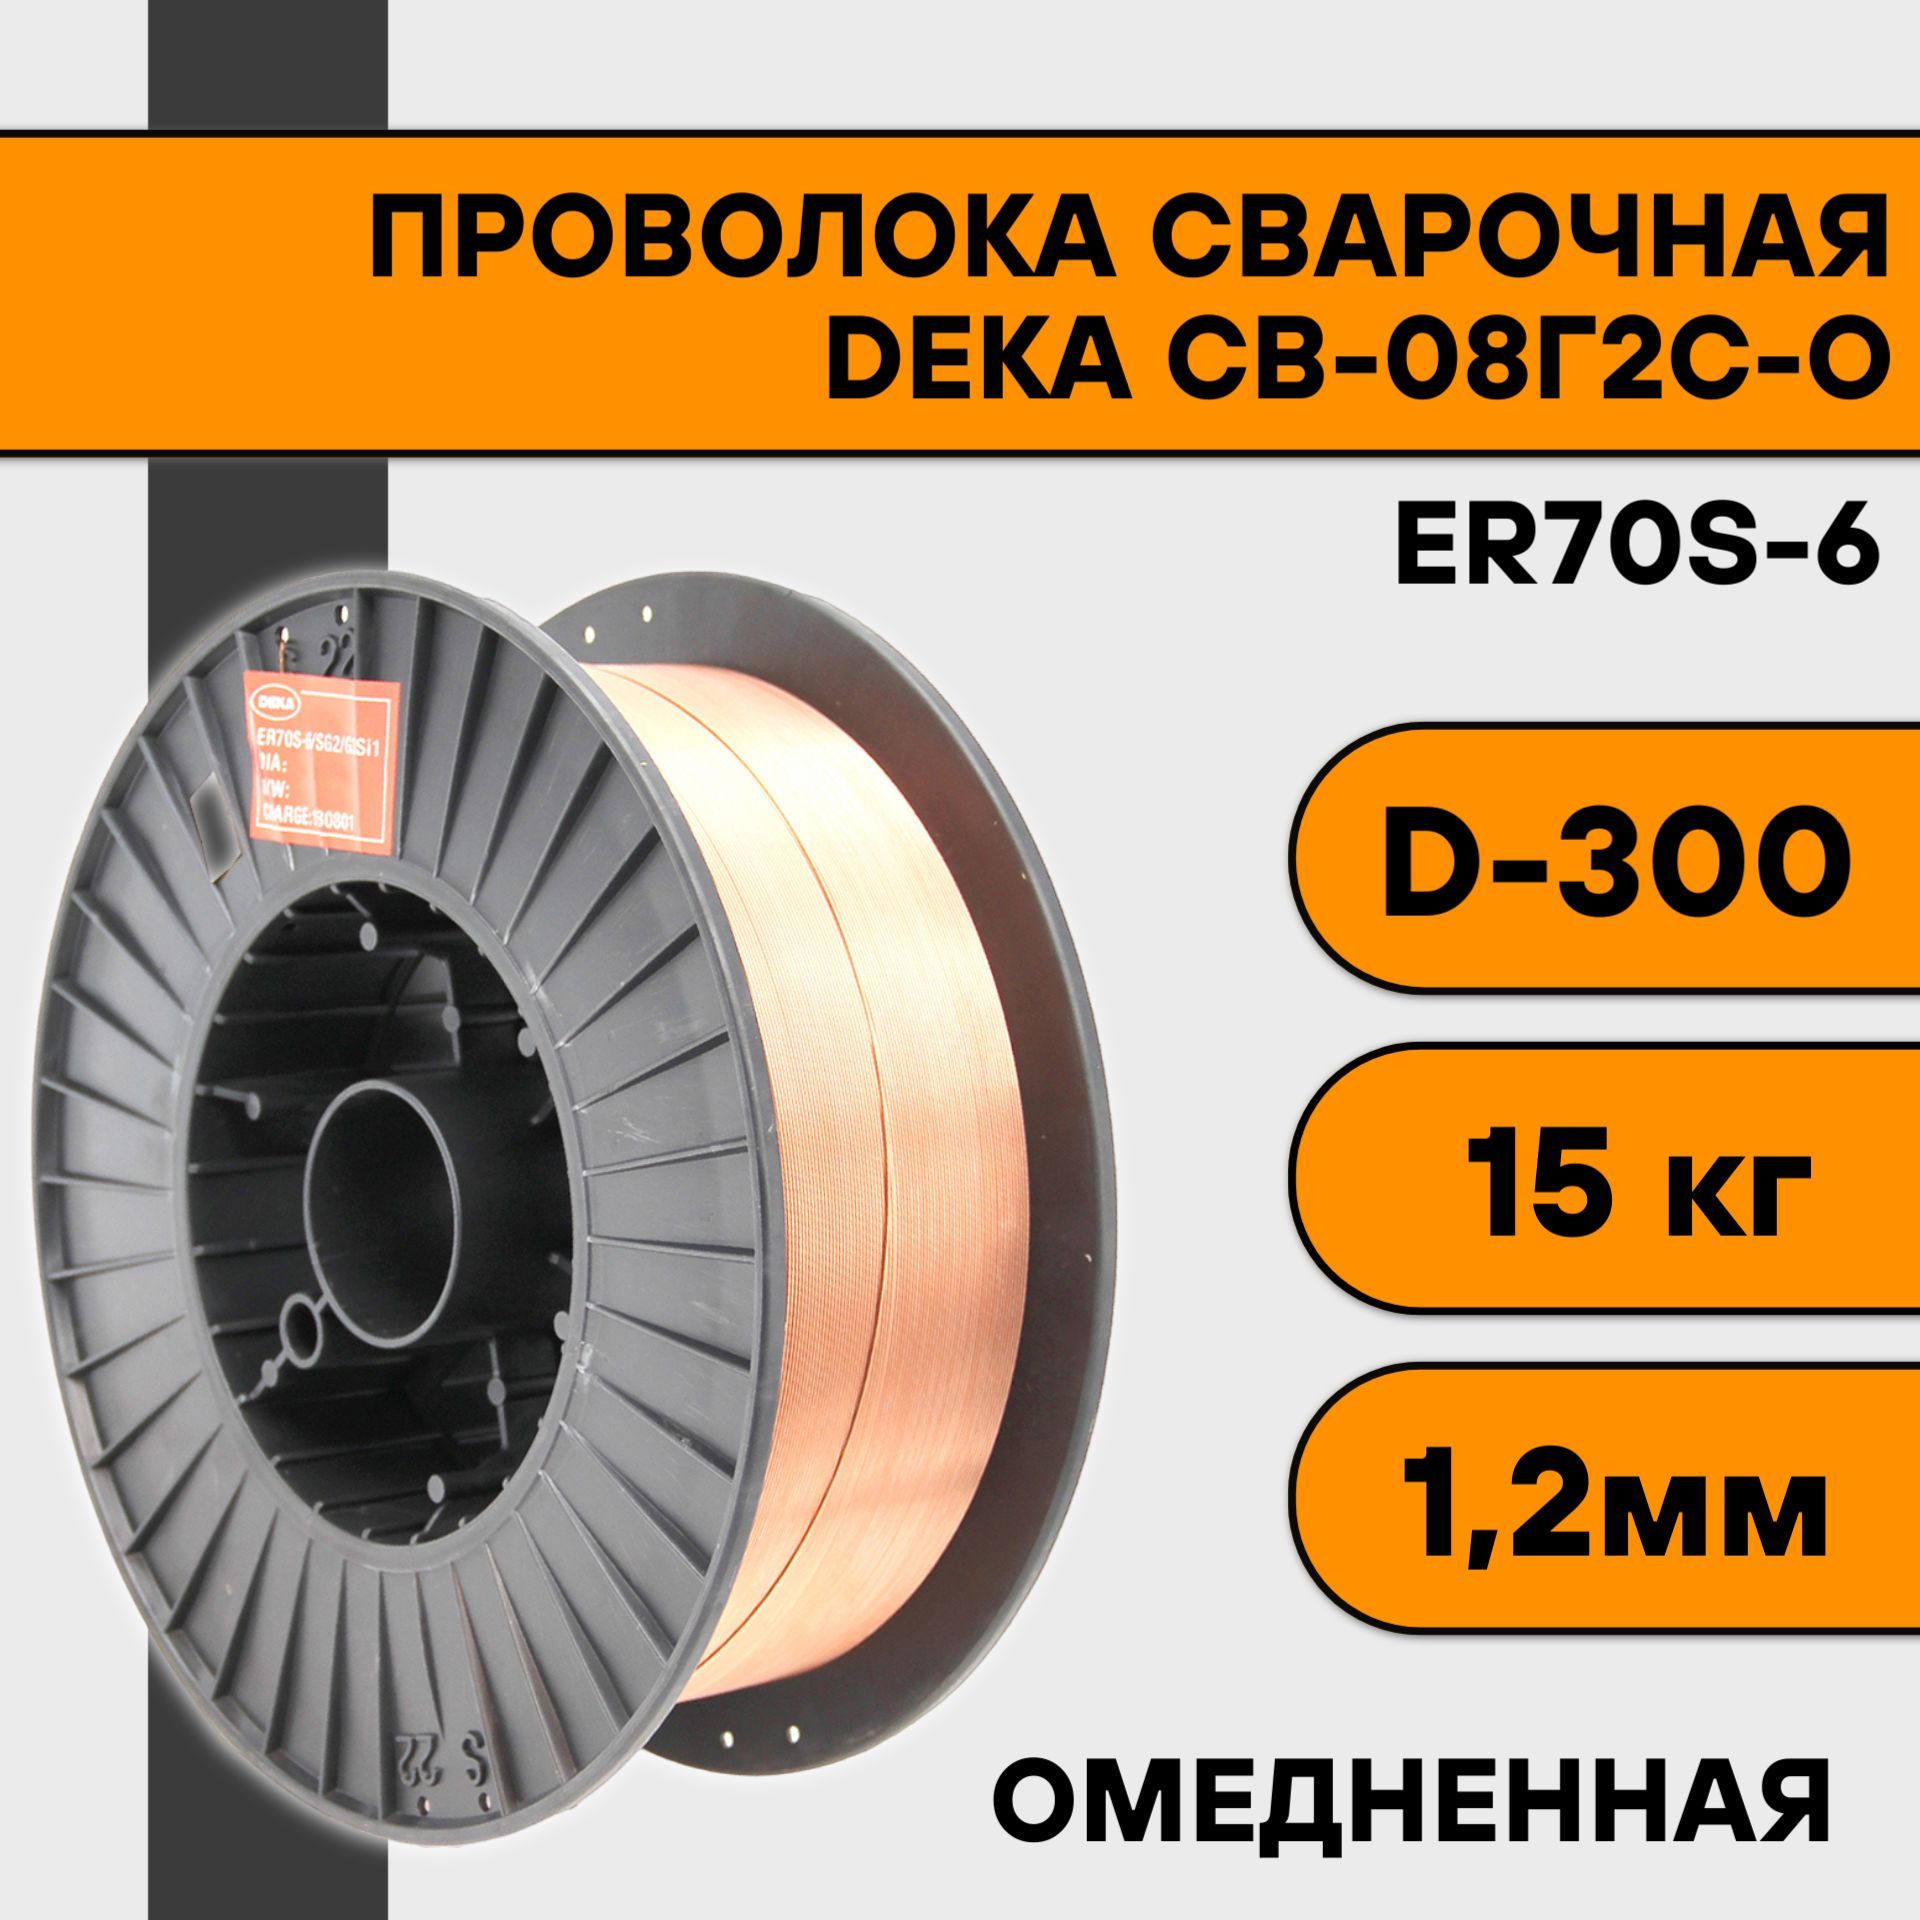 Сварочная проволока омедненная Deka ER70S-6 ф 1,2 мм (15 кг) D300 сварочная проволока омедненная deka er70s 6 ф 0 8 мм 5 кг d200